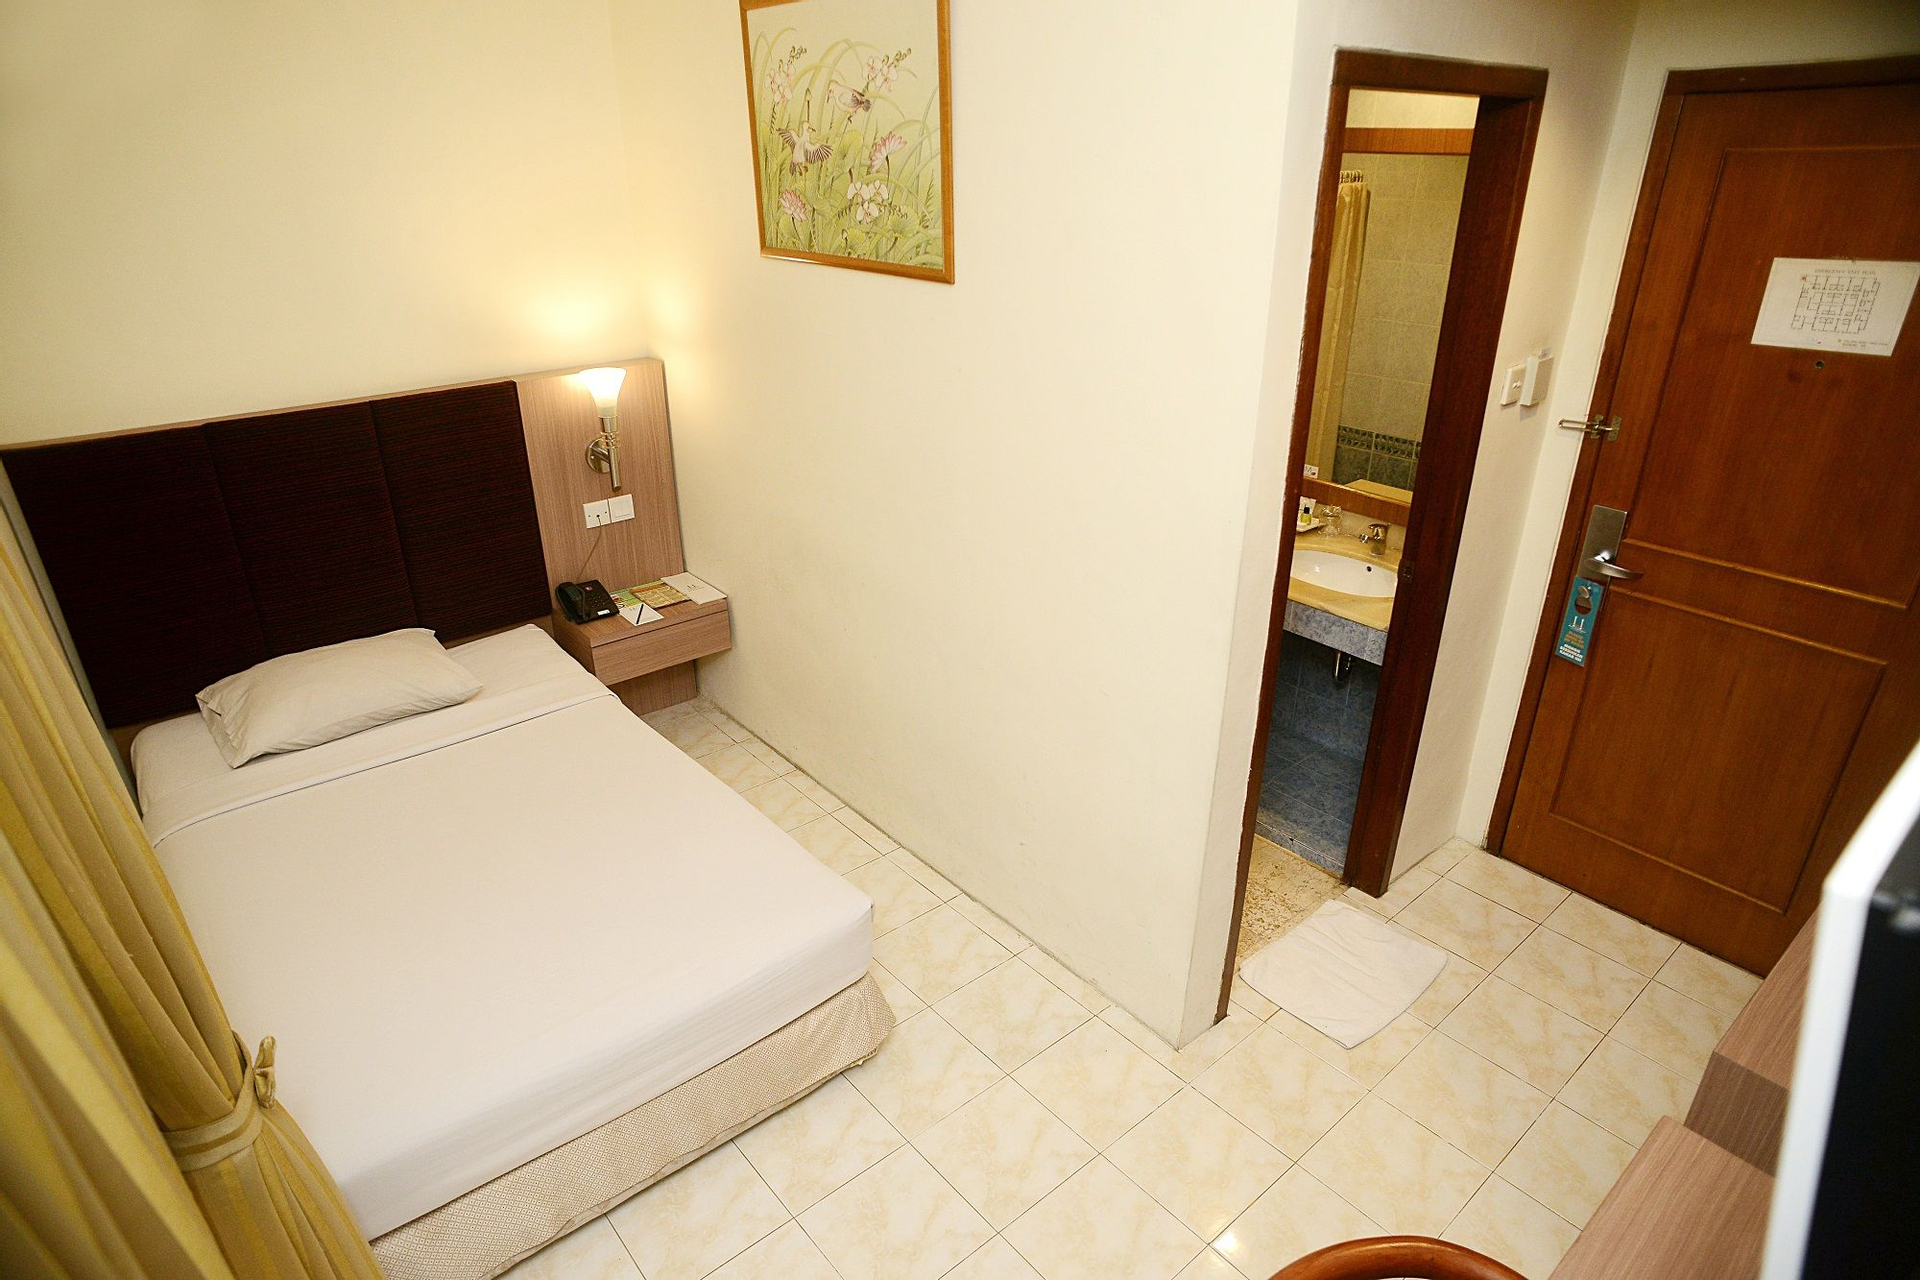 Bedroom 3, Hotel Anugerah Palembang, Palembang